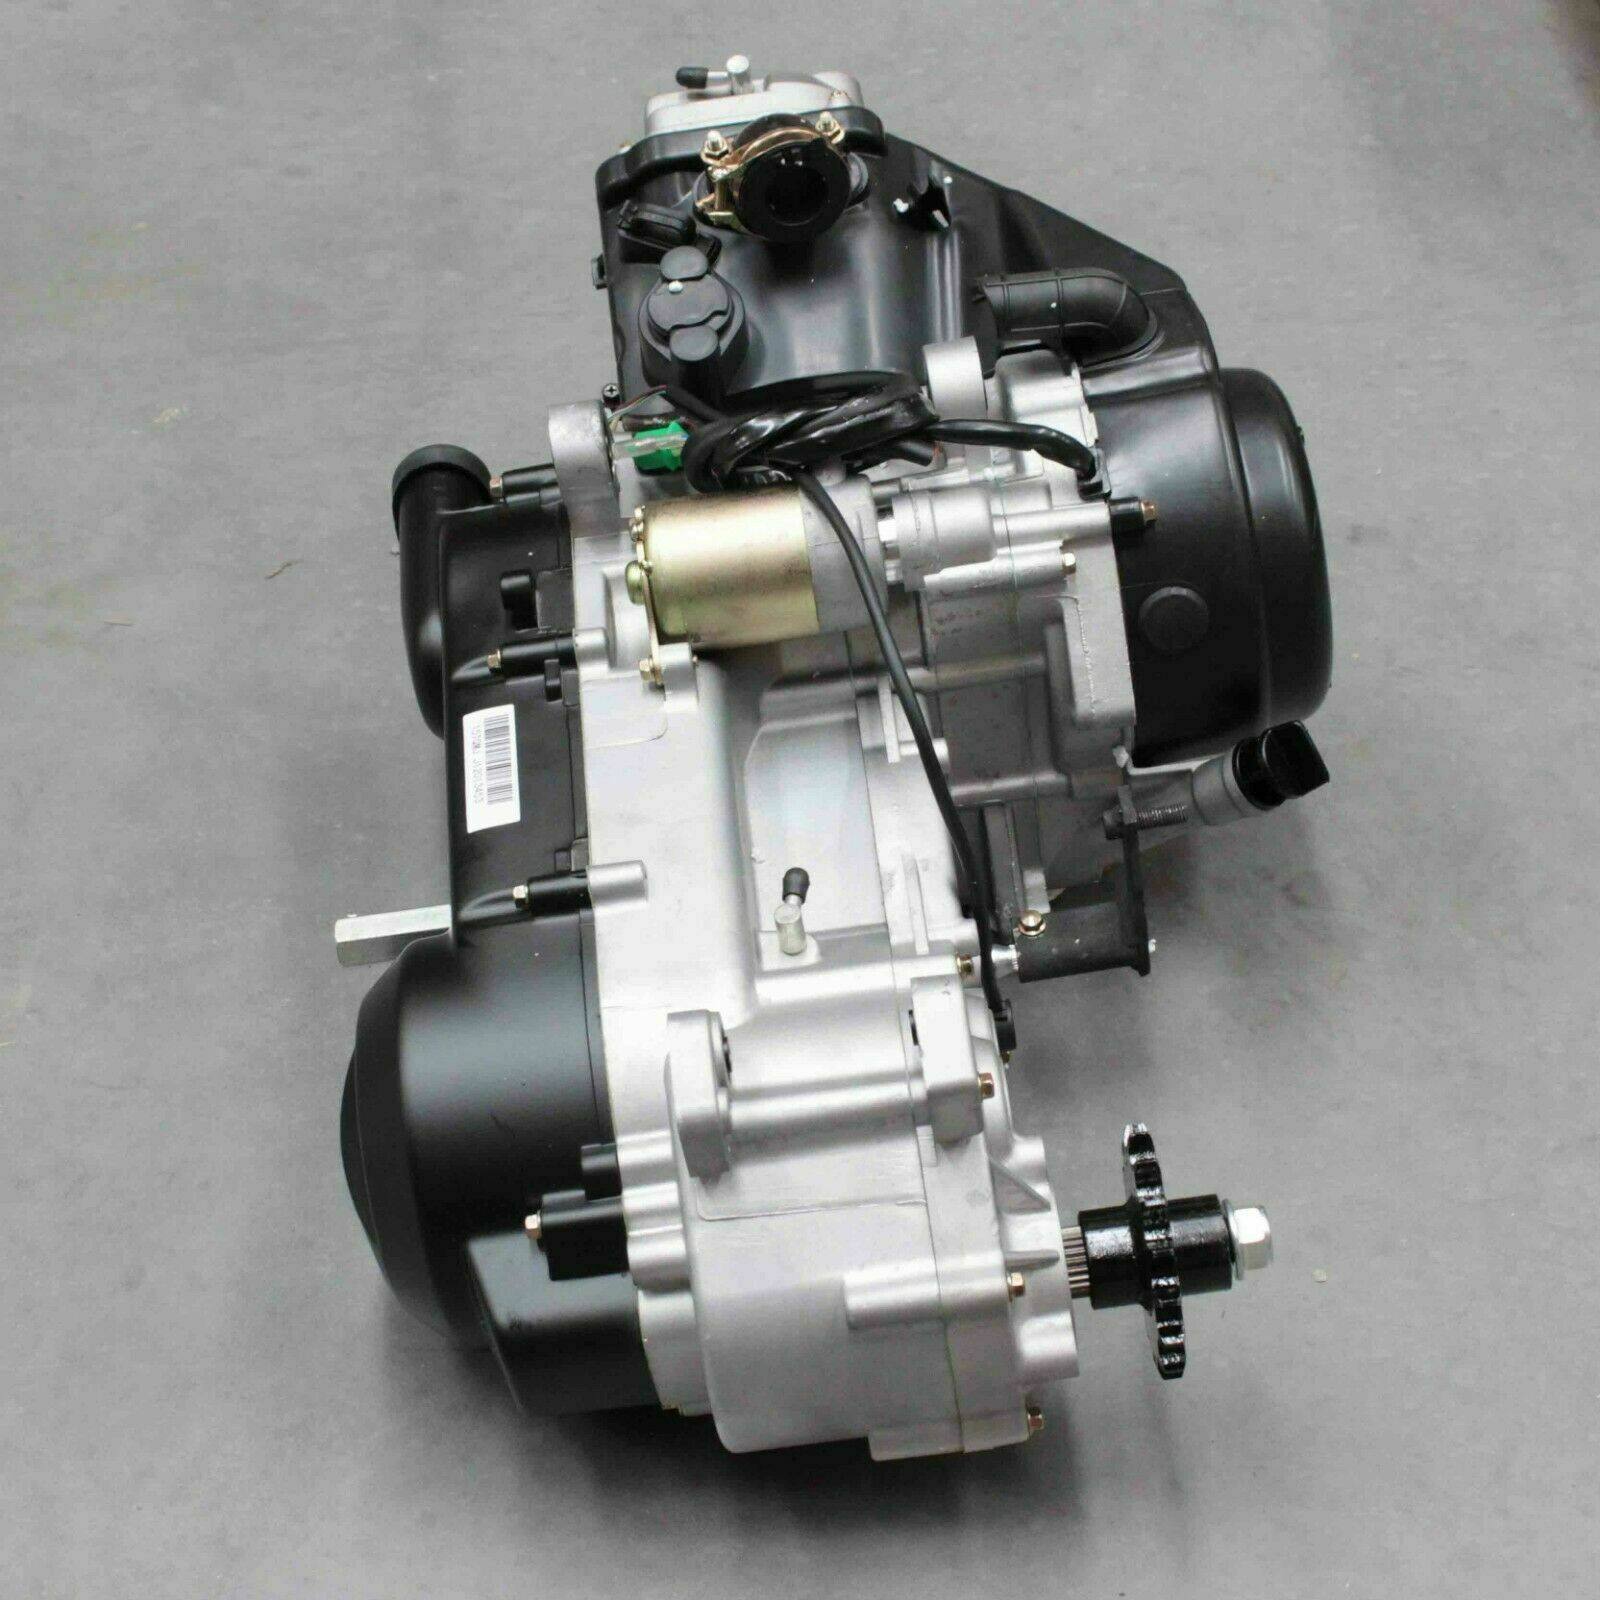 GY6 150cc Engine Motor ATV Quad Scooter Go Kart Buggy 4 Stroke Auto CVT Clutch - TDRMOTO